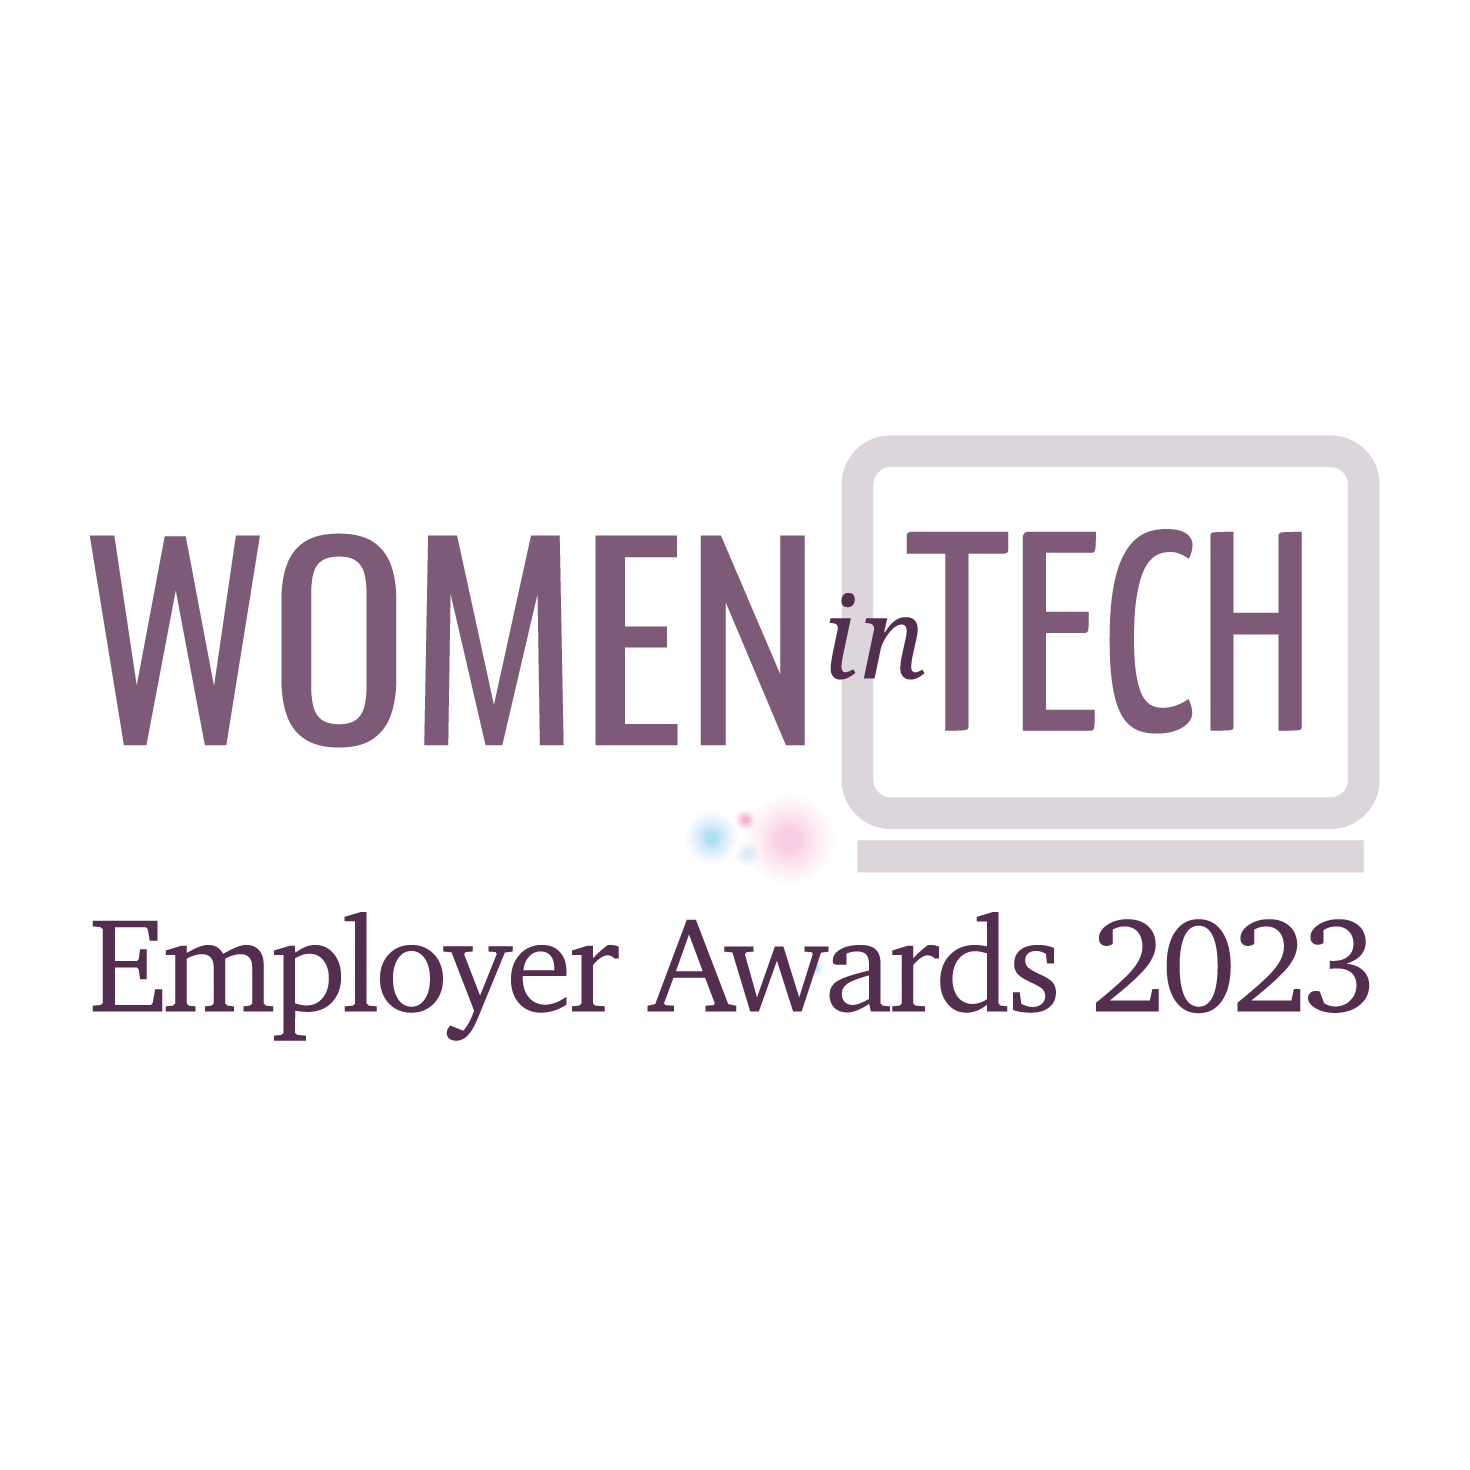 Winners 2023 — Women In Tech Employer Awards 2023